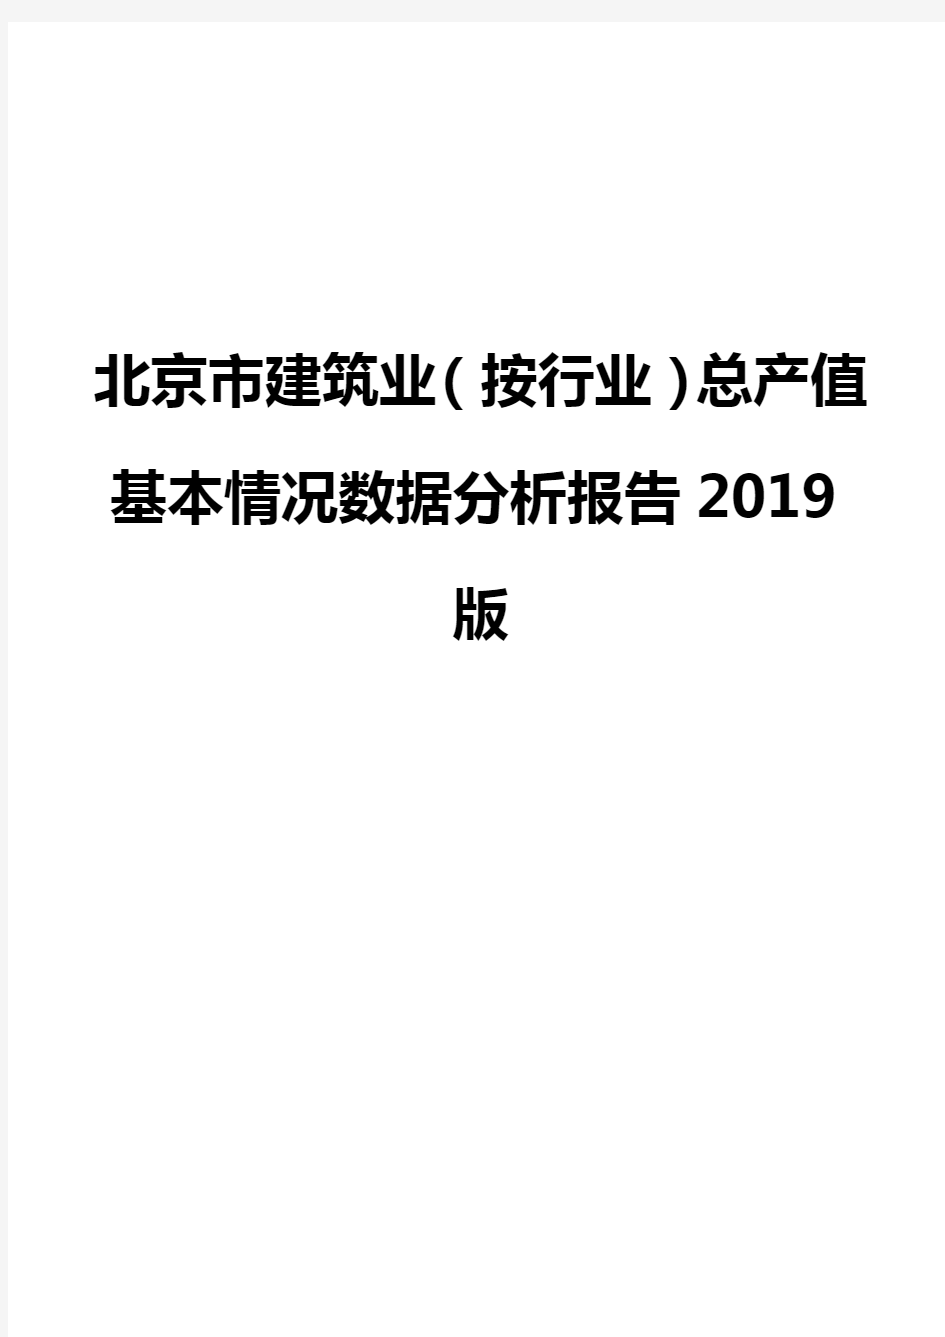 北京市建筑业(按行业)总产值基本情况数据分析报告2019版